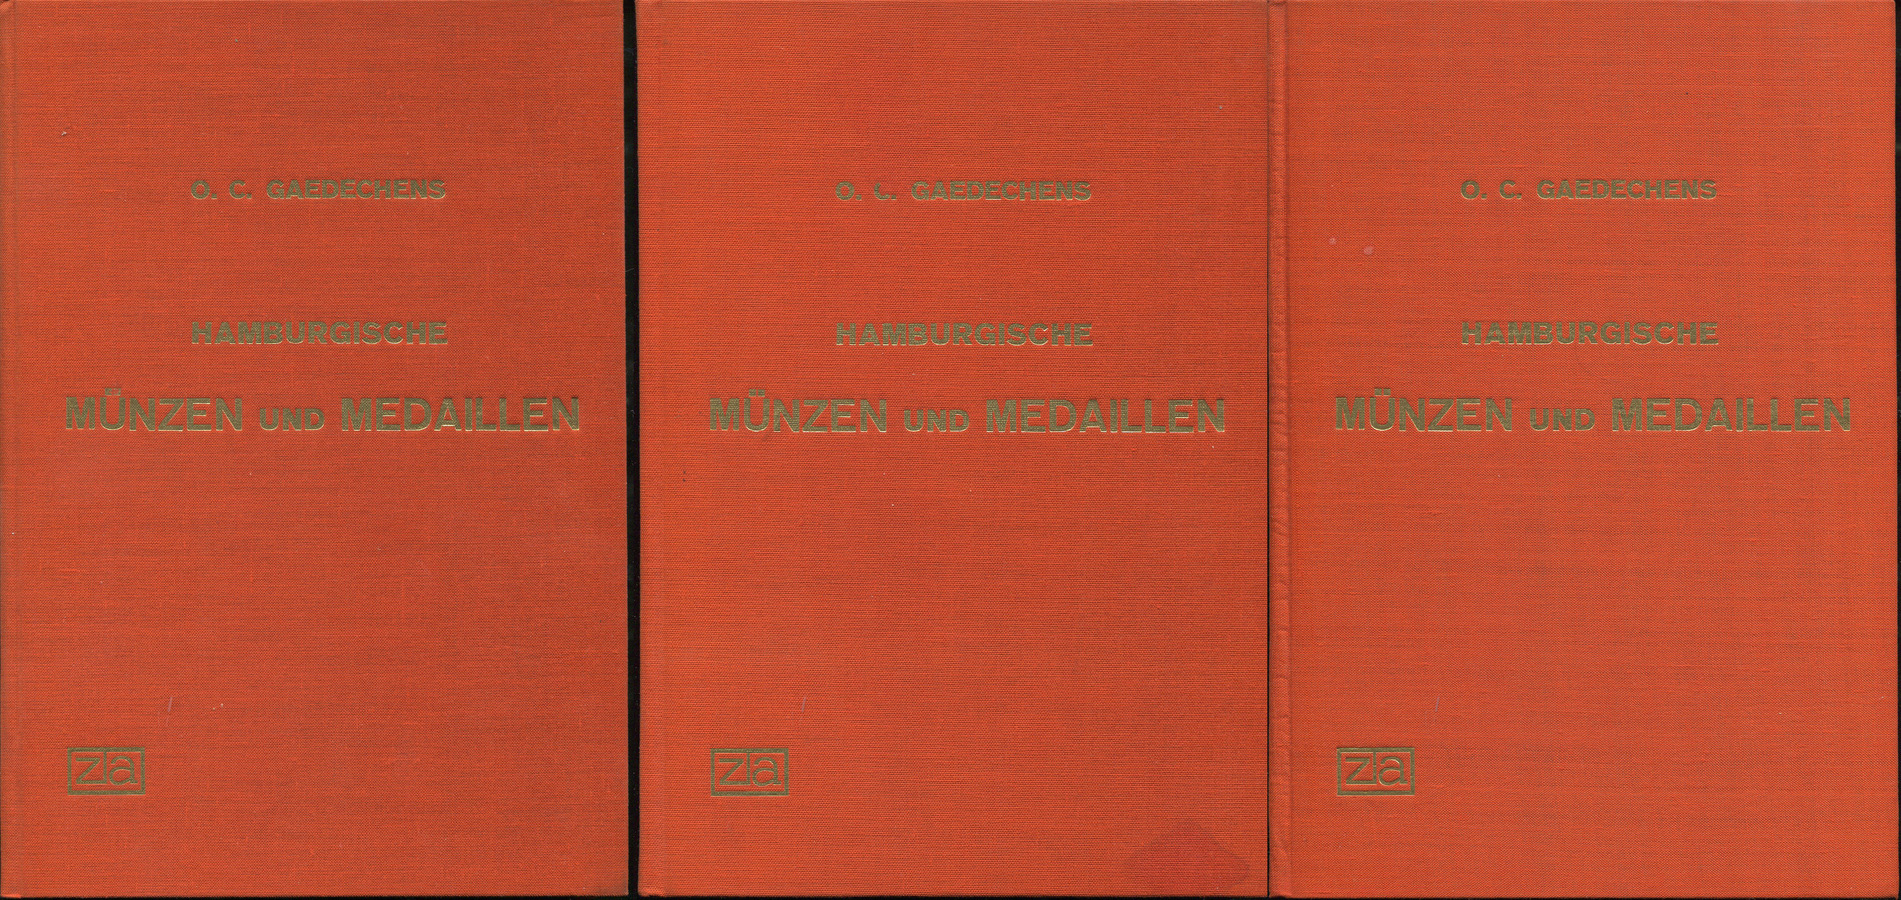 Книга Gaedechens O C  "Hamburgische Munzen und Medaillen" в 3-х томах 1970